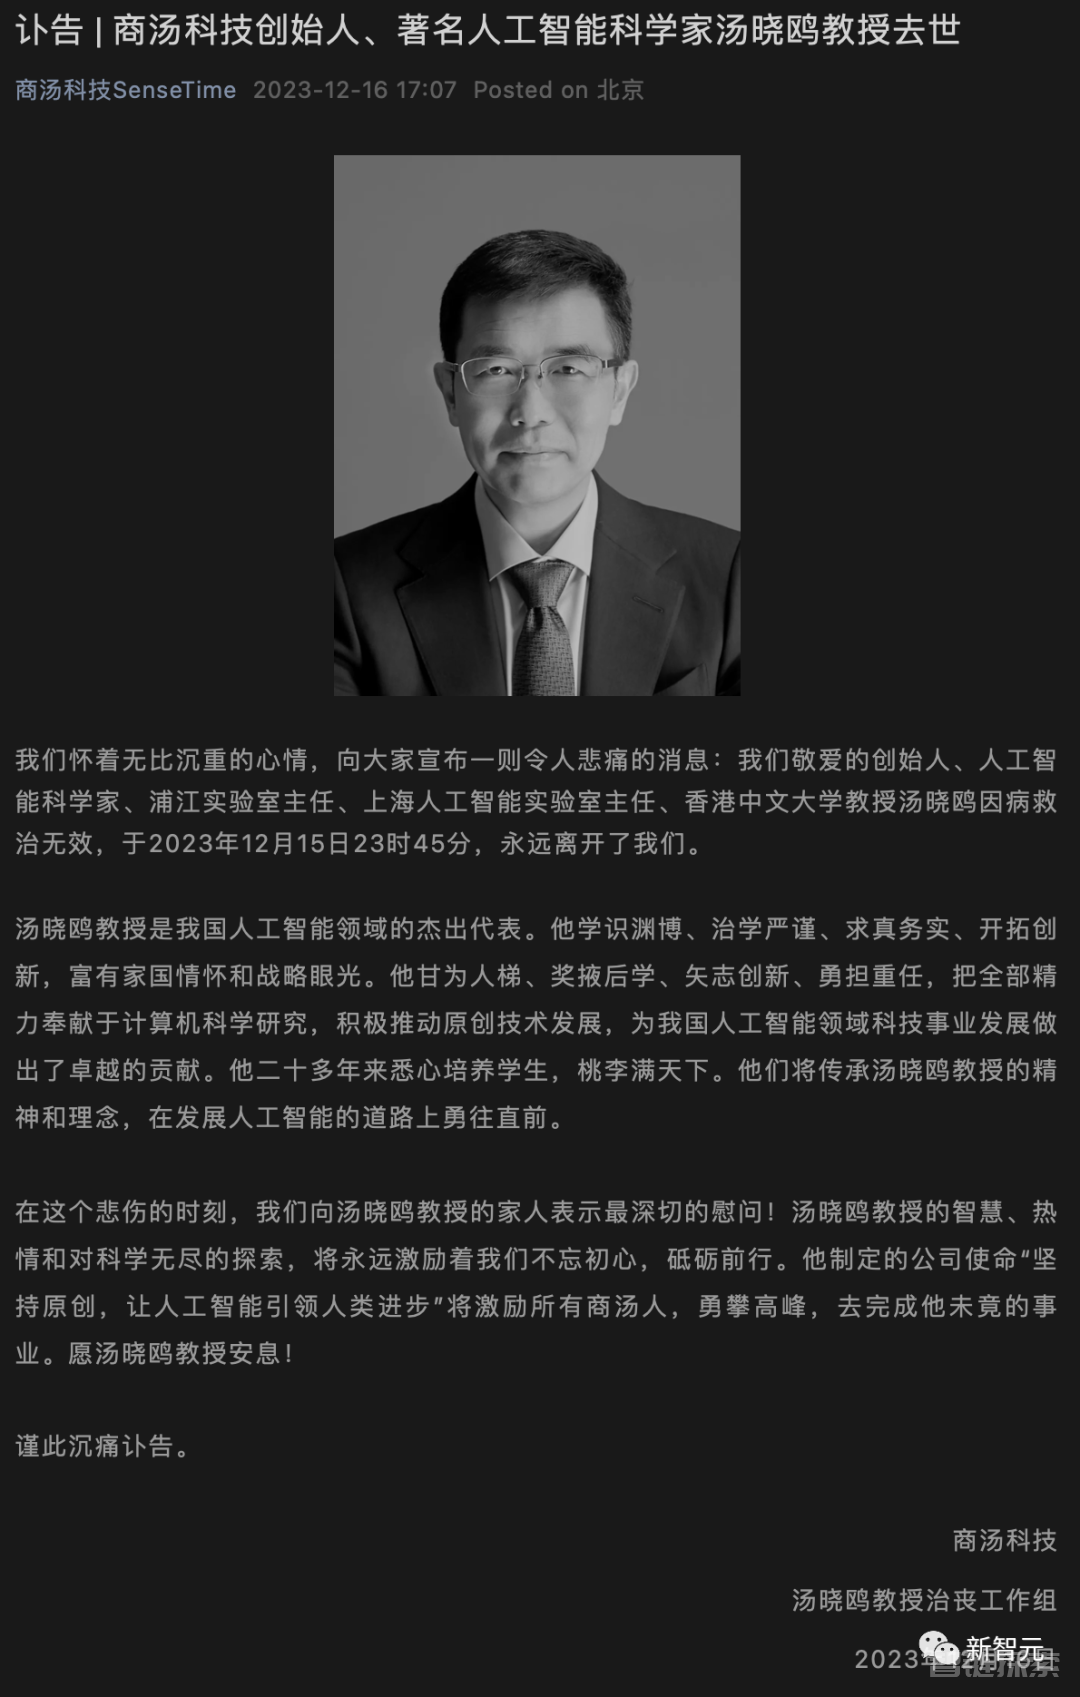 哀悼！55岁商汤科技创始人汤晓鸥突然离世，他撑起中国计算机视觉研究半壁江山